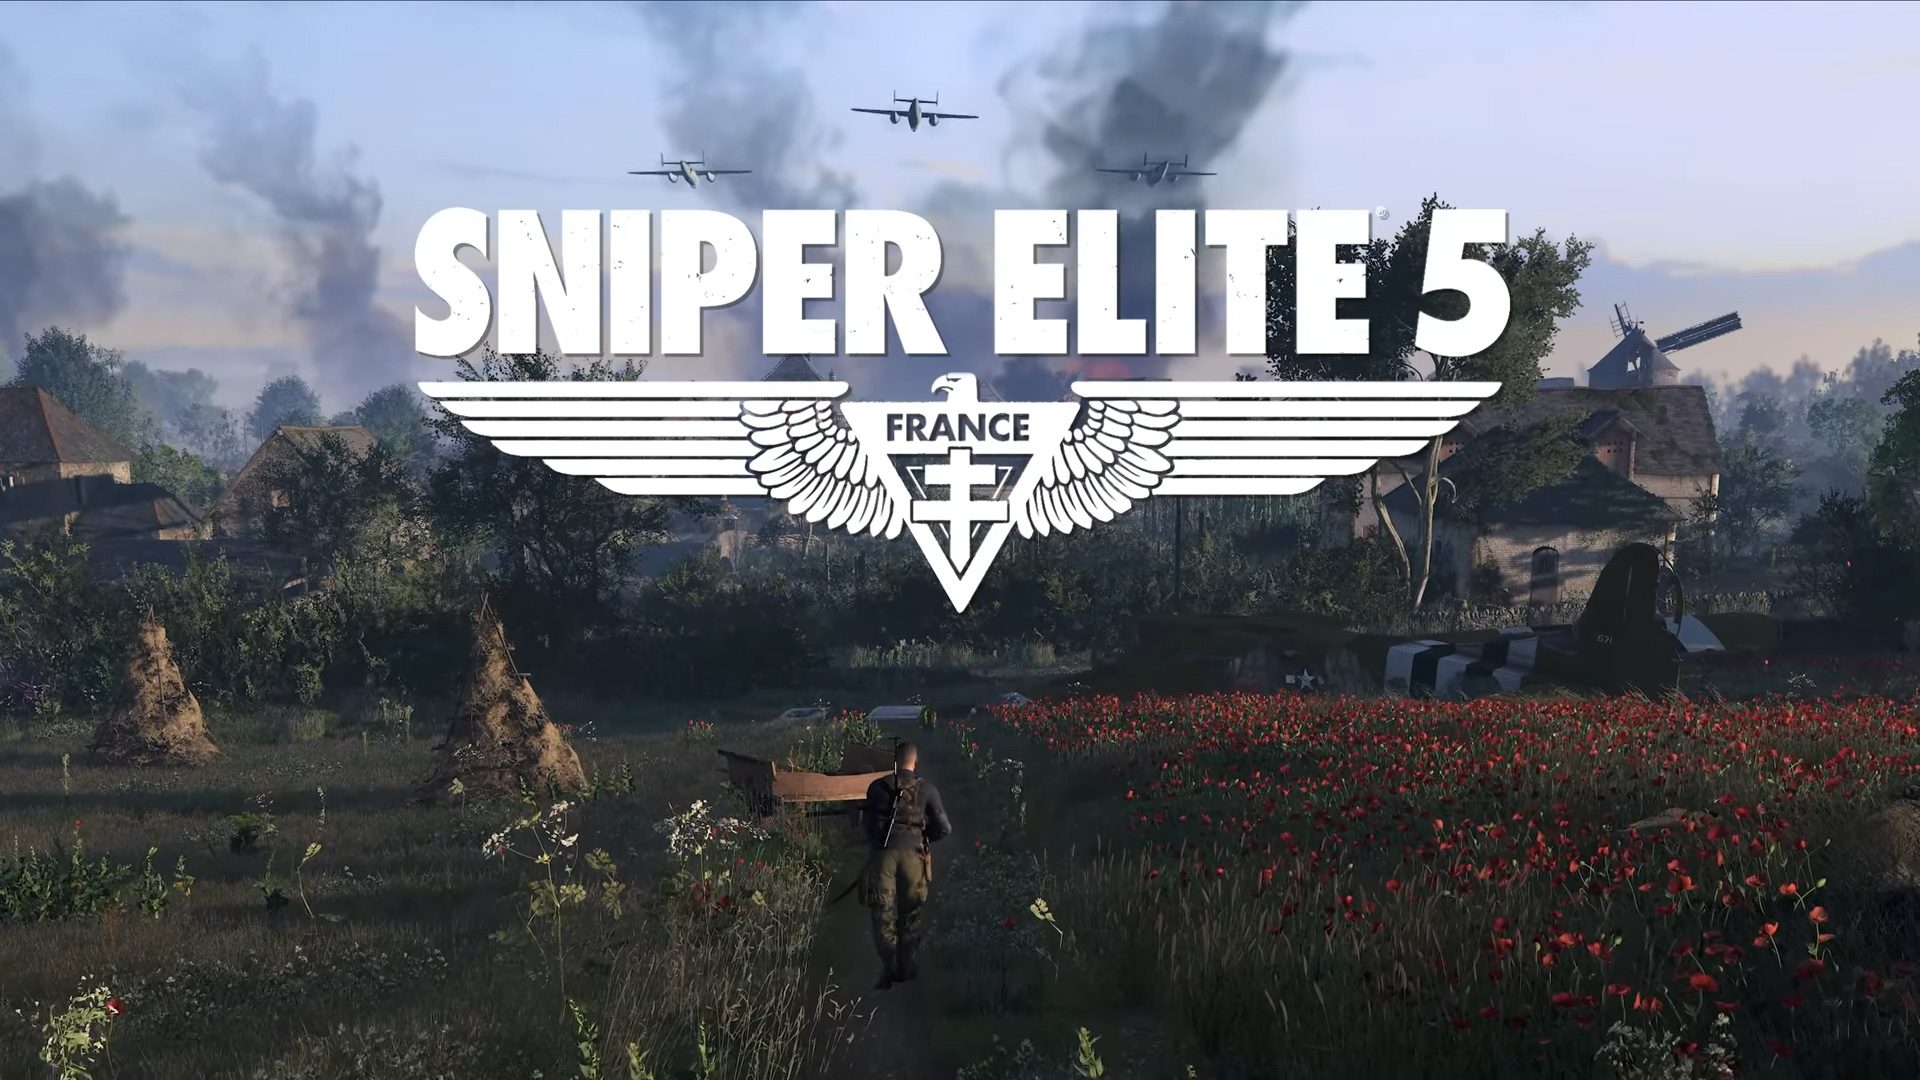 Sniper-elite-5-temp